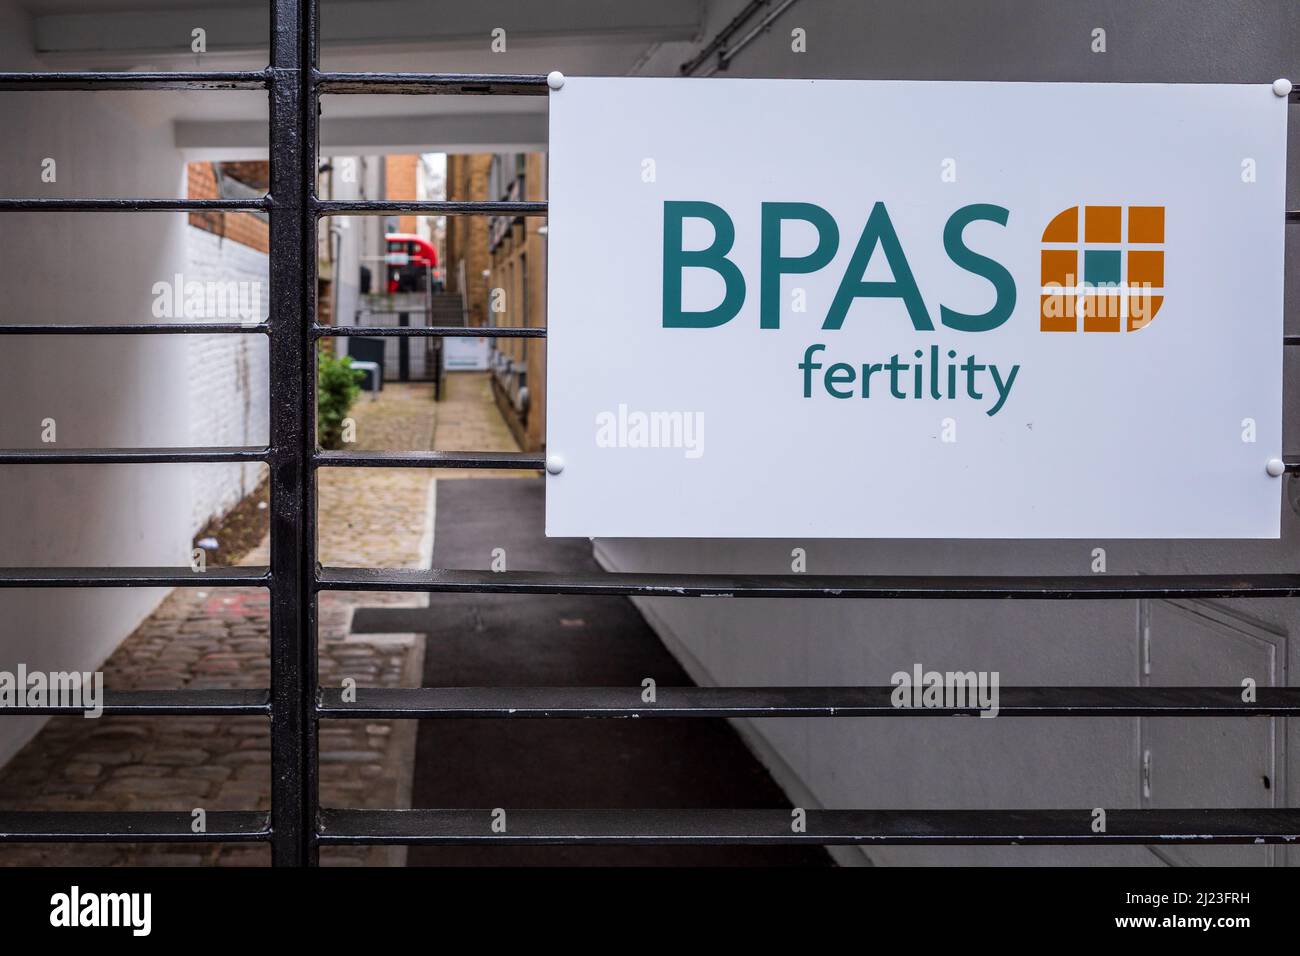 BPAS Fertility Services à Christopher place, Chalton St, Londres. Prestataire de services de fertilité à but non lucratif en dehors du NHS. Banque D'Images